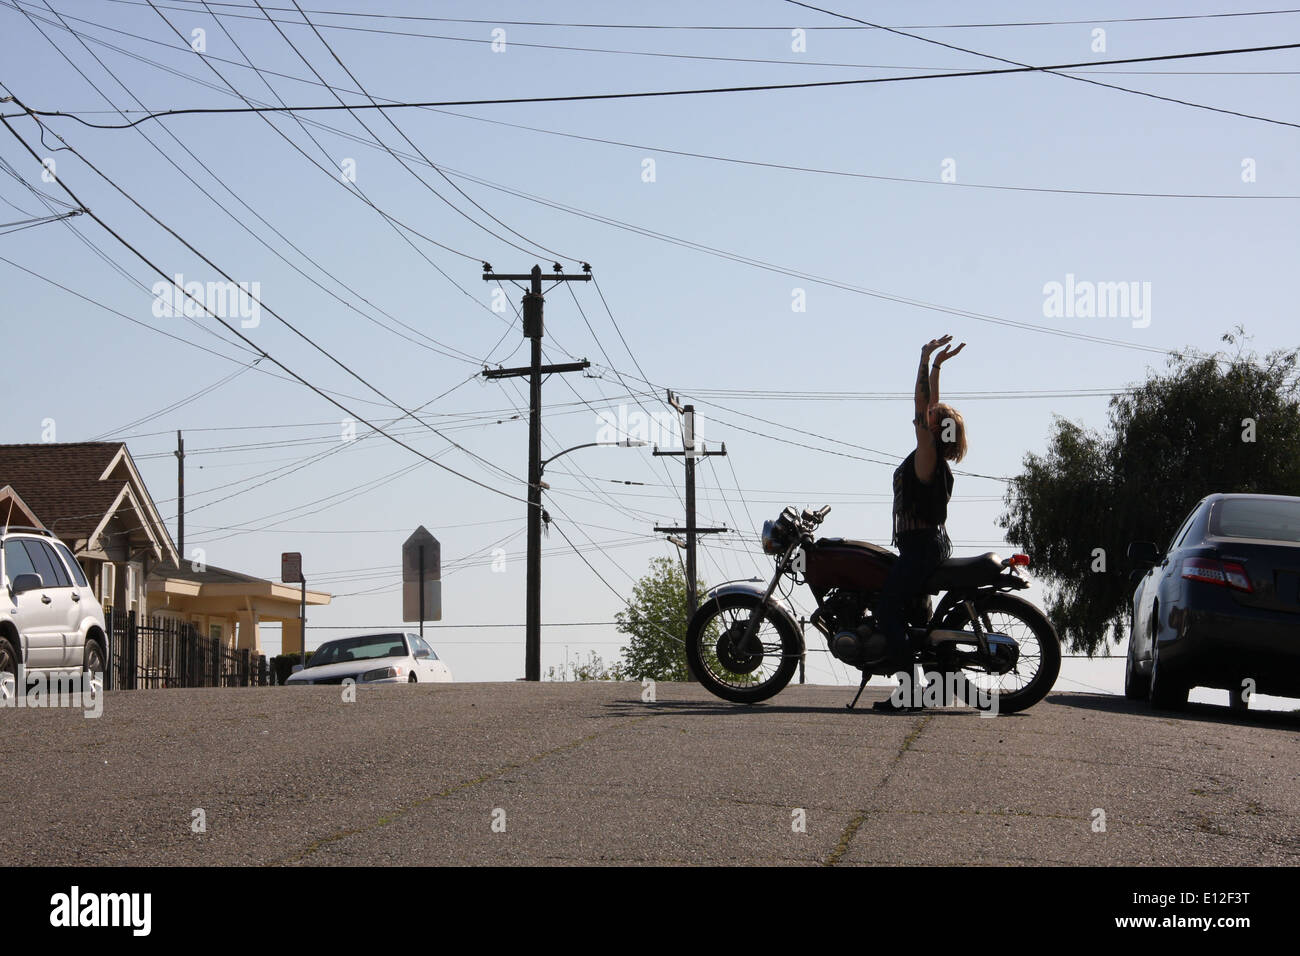 Motorrad schicke Freiheit öffnen Sie Straße Feminismus Ermächtigung sonnigen Kalifornien Silhouette Sonne Stadtbild Nachbarschaft Frauenpower Stockfoto